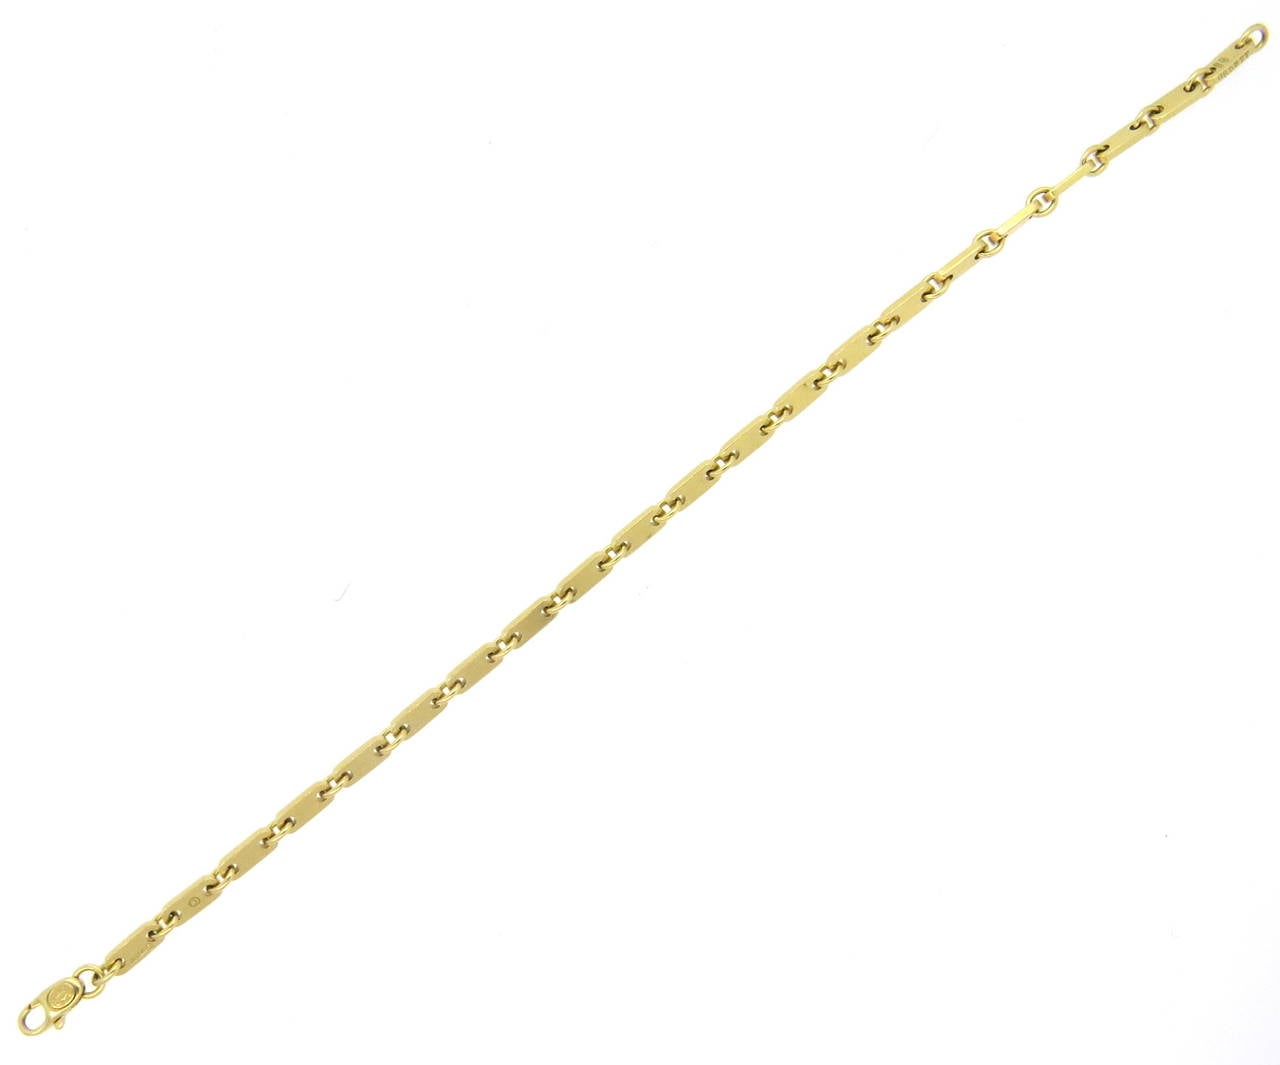 Cartier 18k gold link bracelet, measuring 8